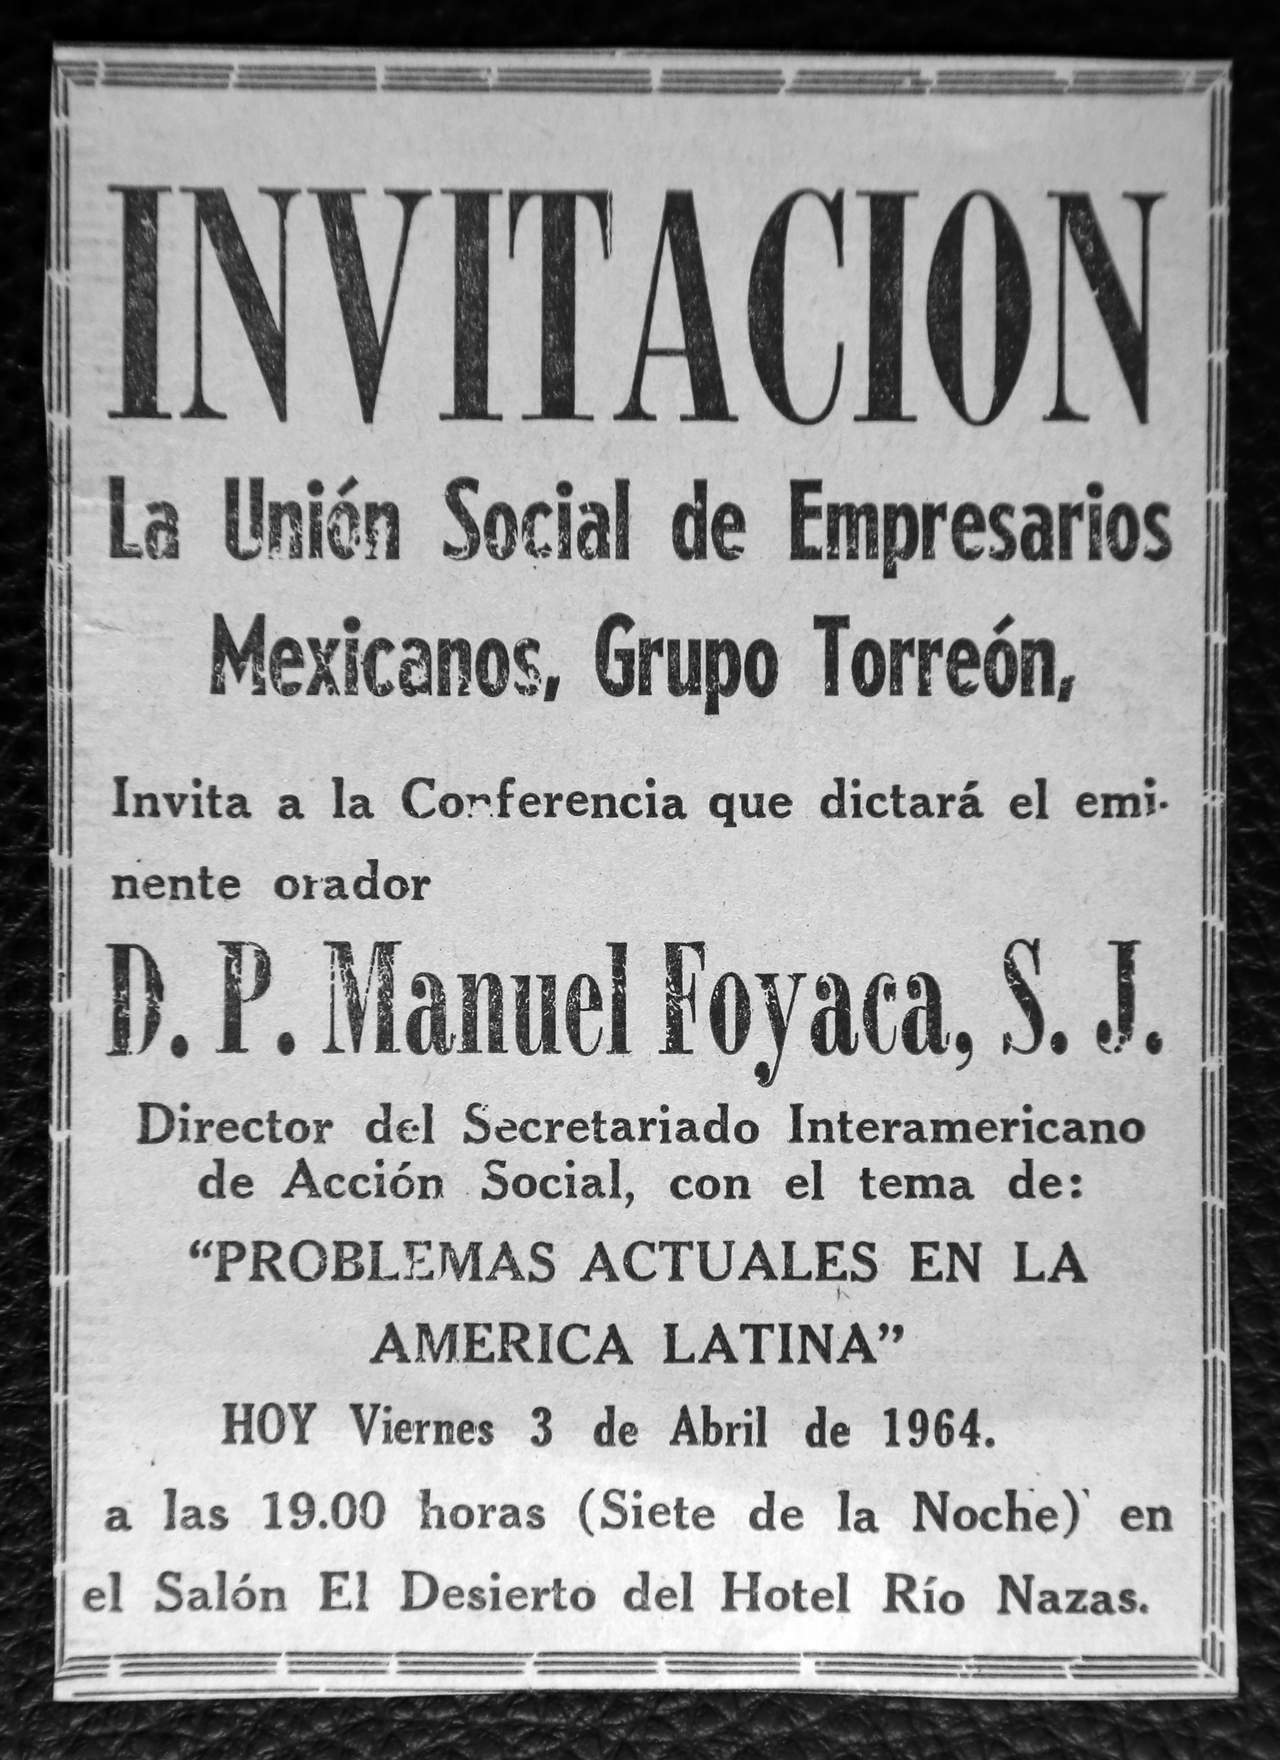 
Invitación  de la Unión de Empresarios Mexicanos, Grupo Torreón.